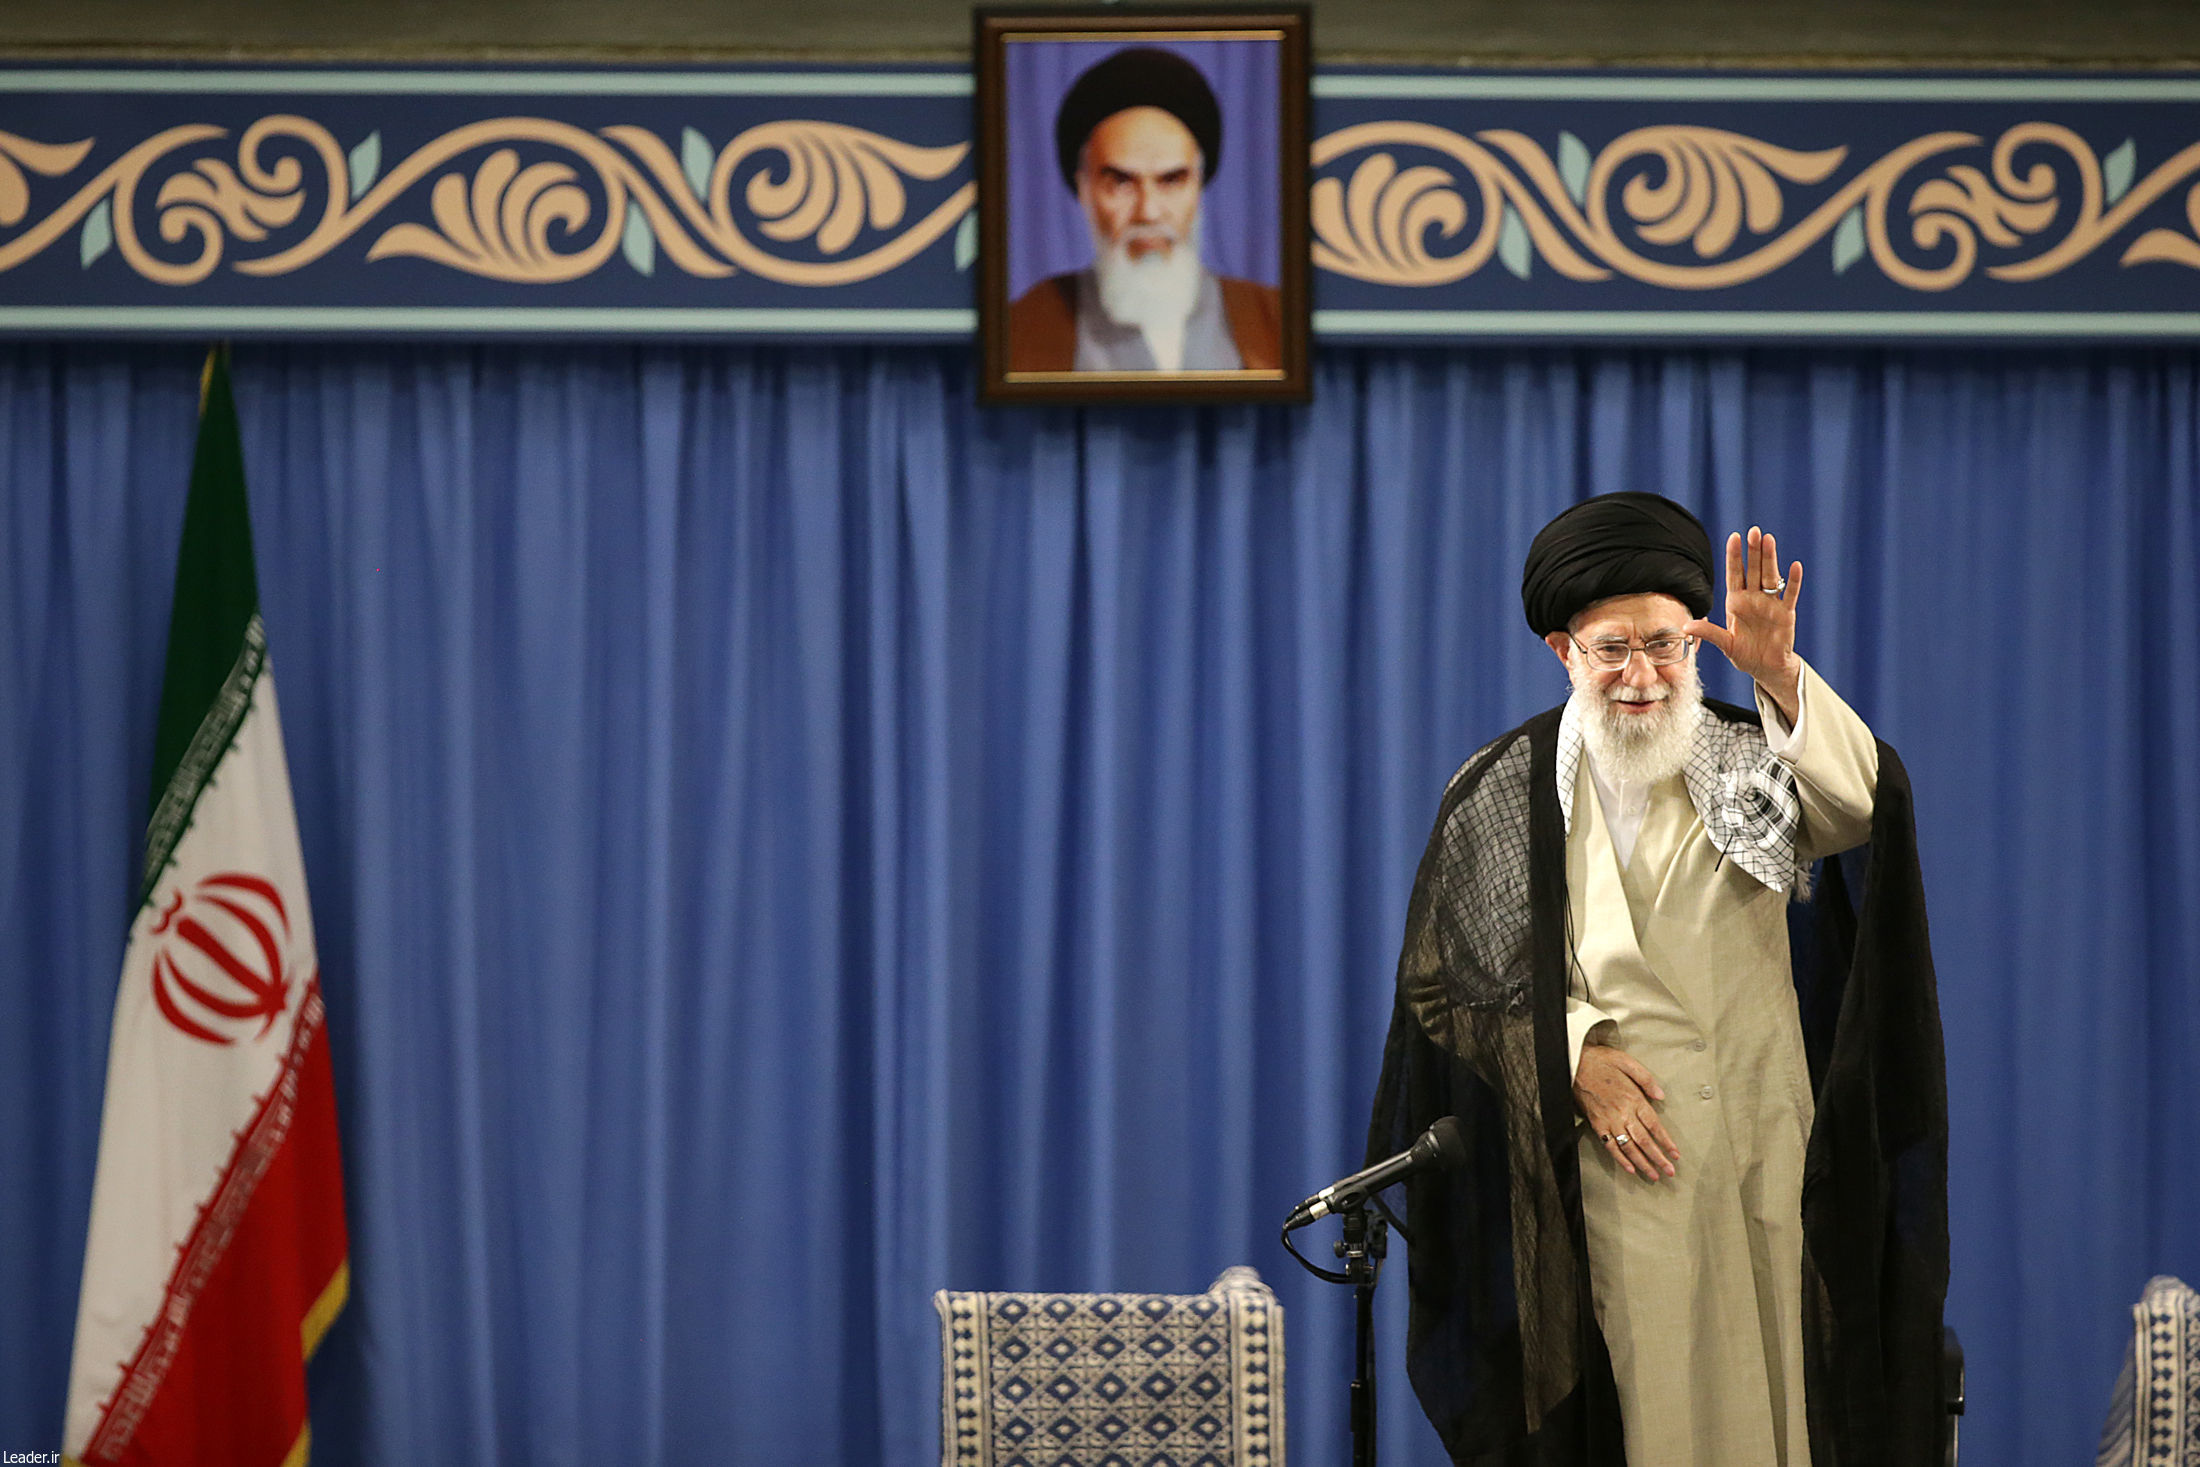  De Iraanse Ayatholla Ali Khamenei